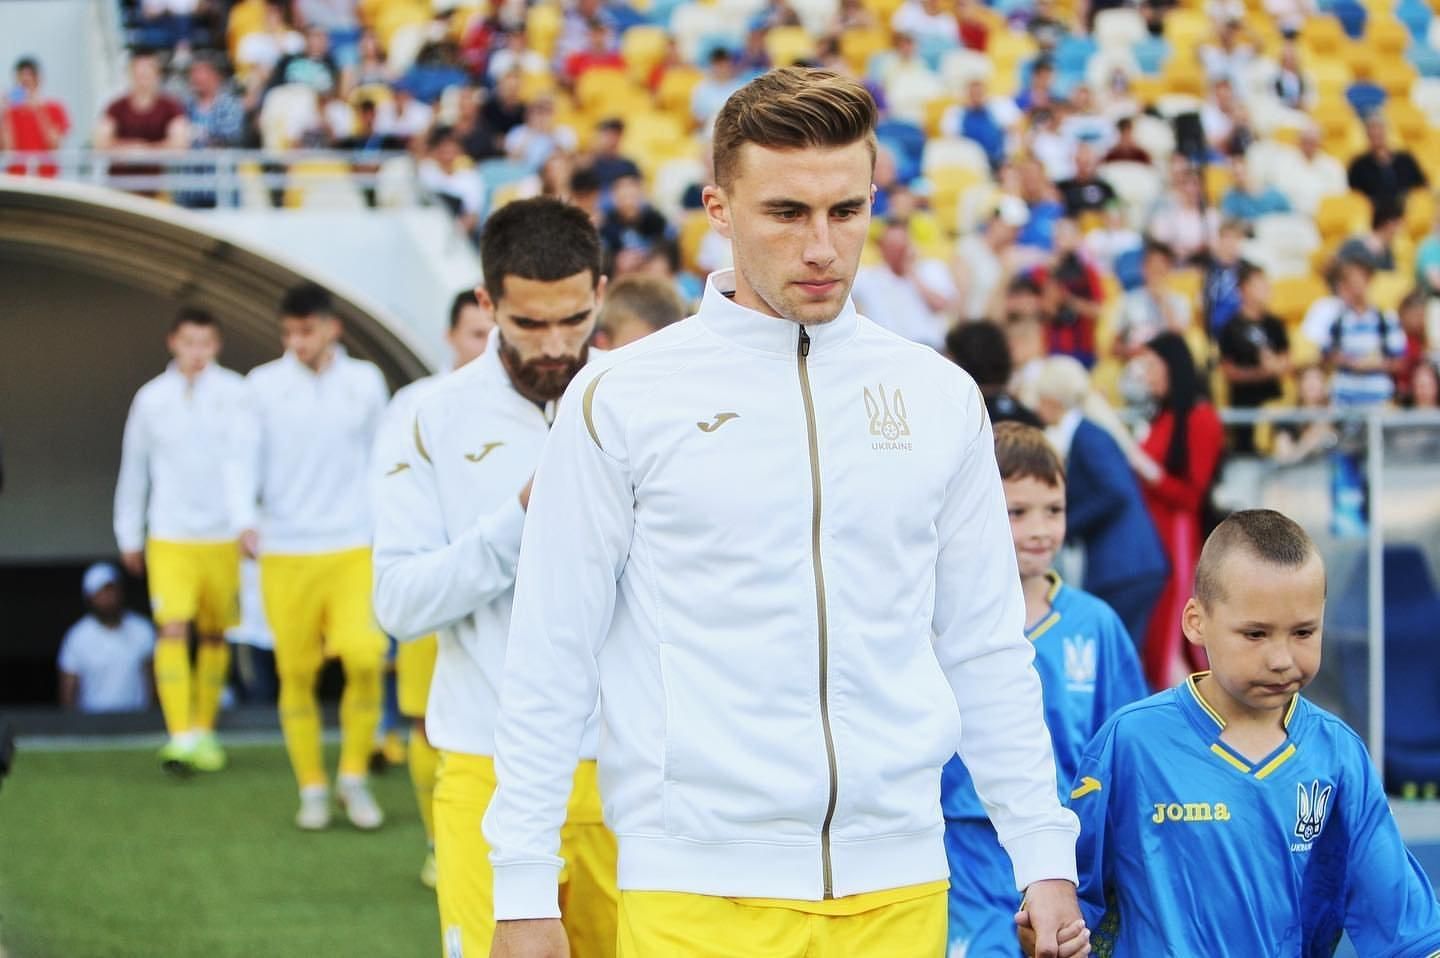 Футболист сборной Украины признался, что ему предлагали испанское гражданство